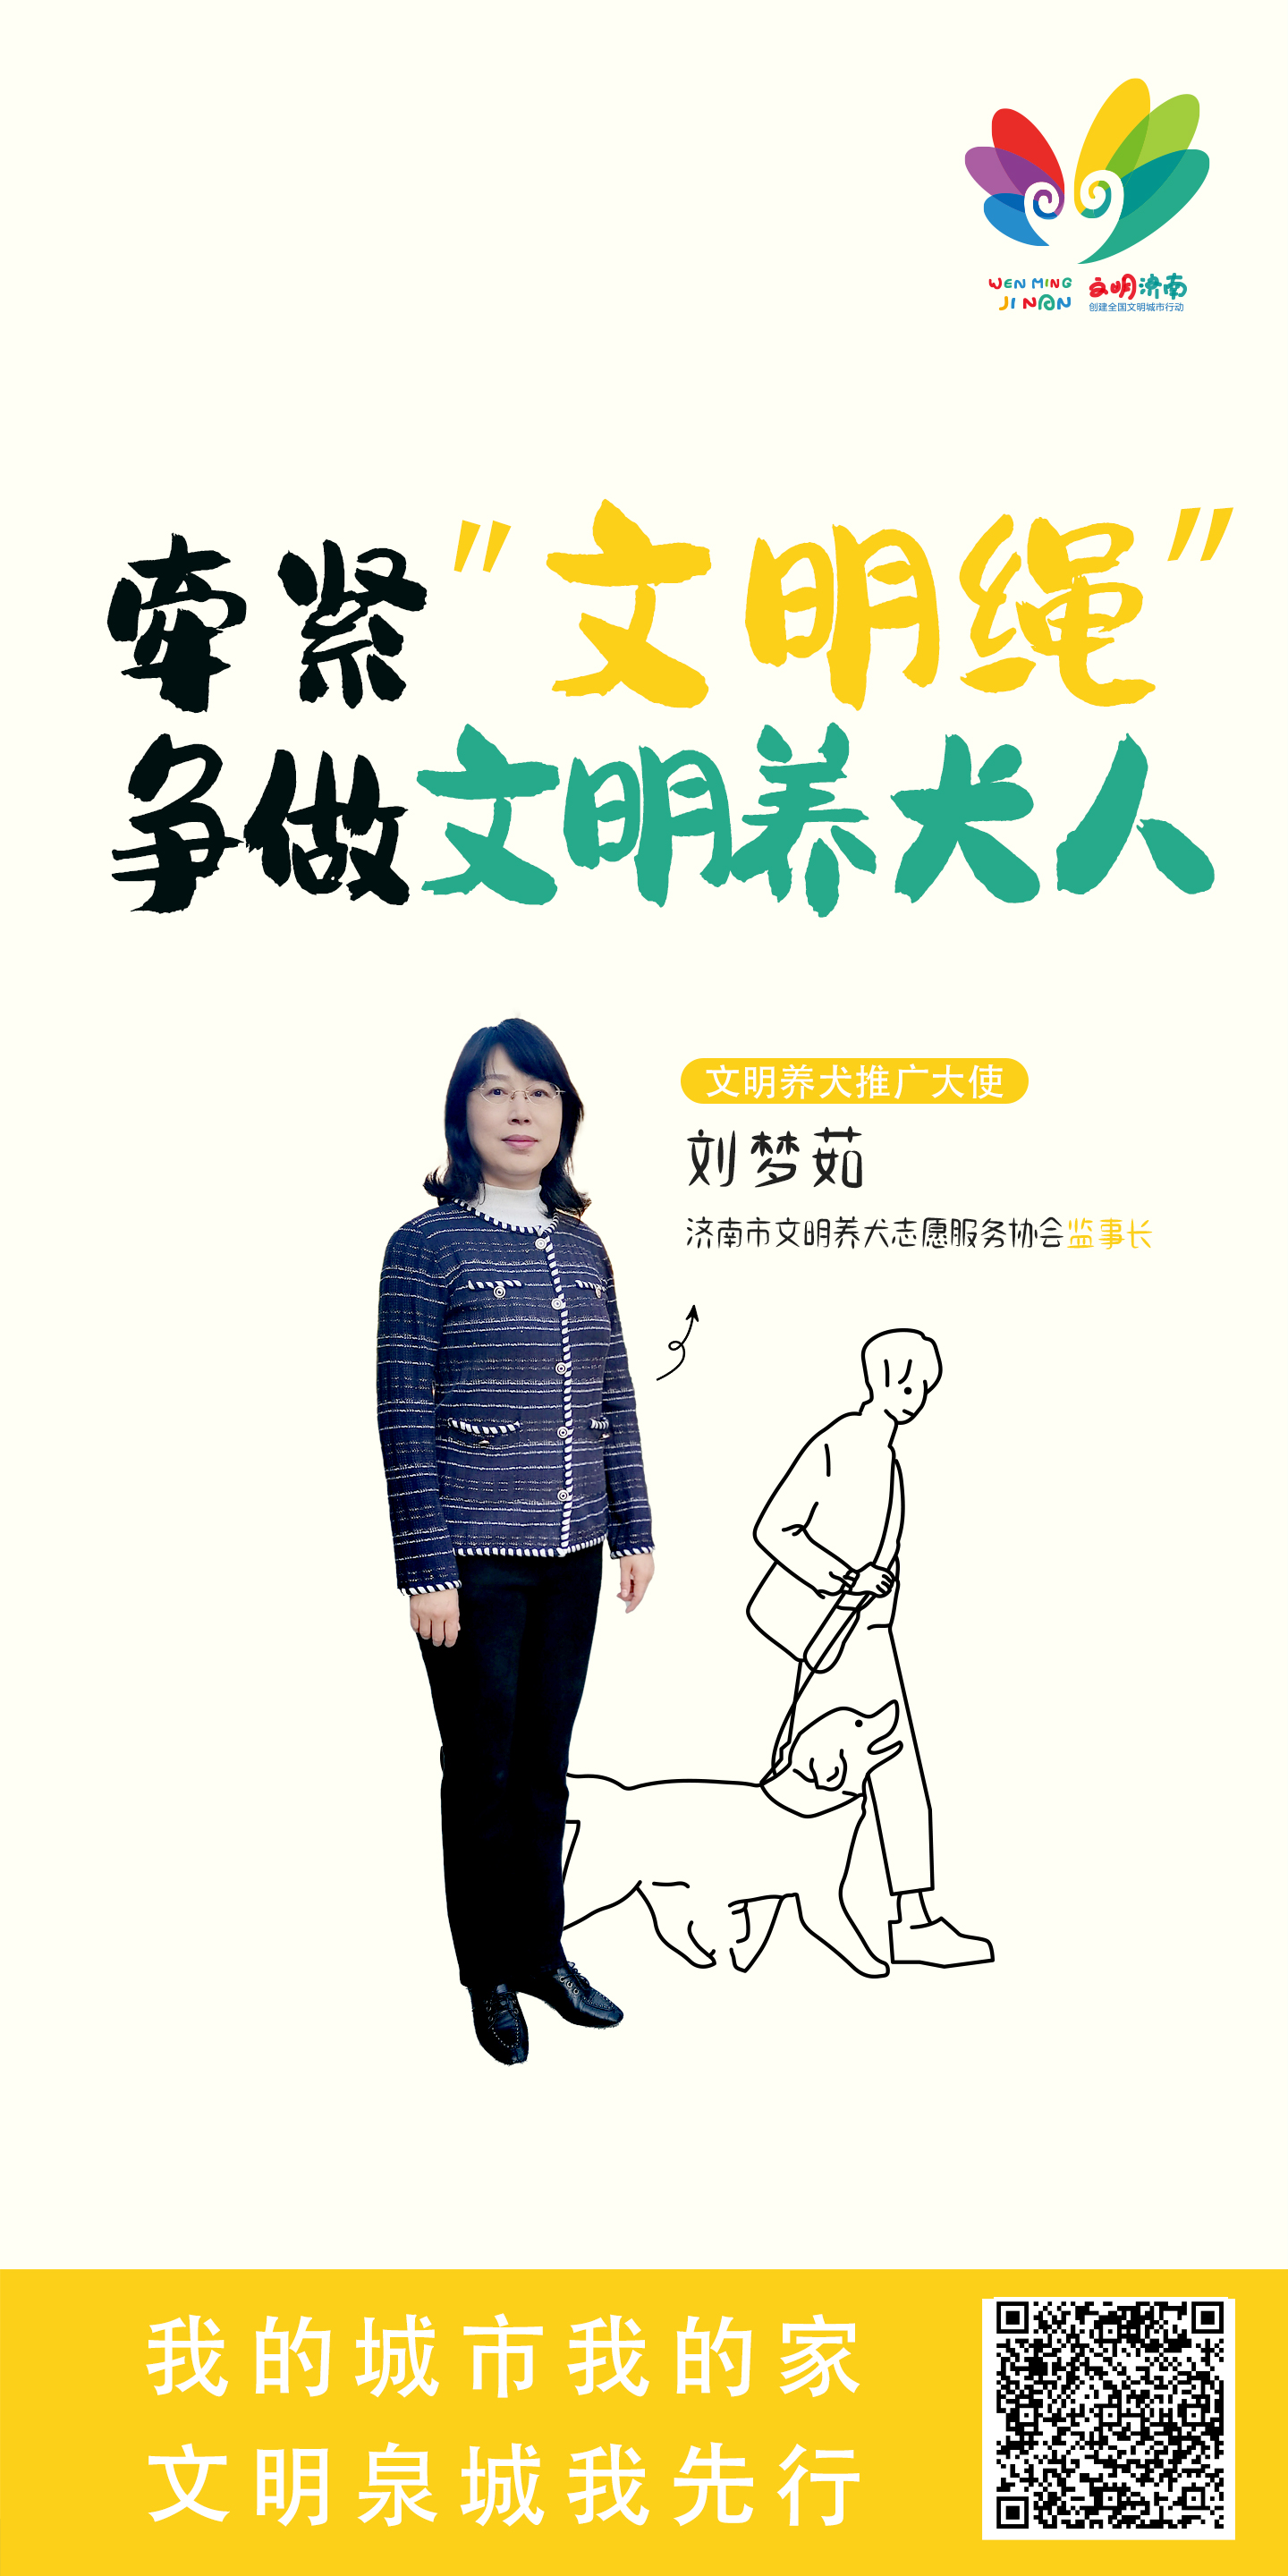 刘梦茹 “文明养犬”行动推广大使宣传公益广告